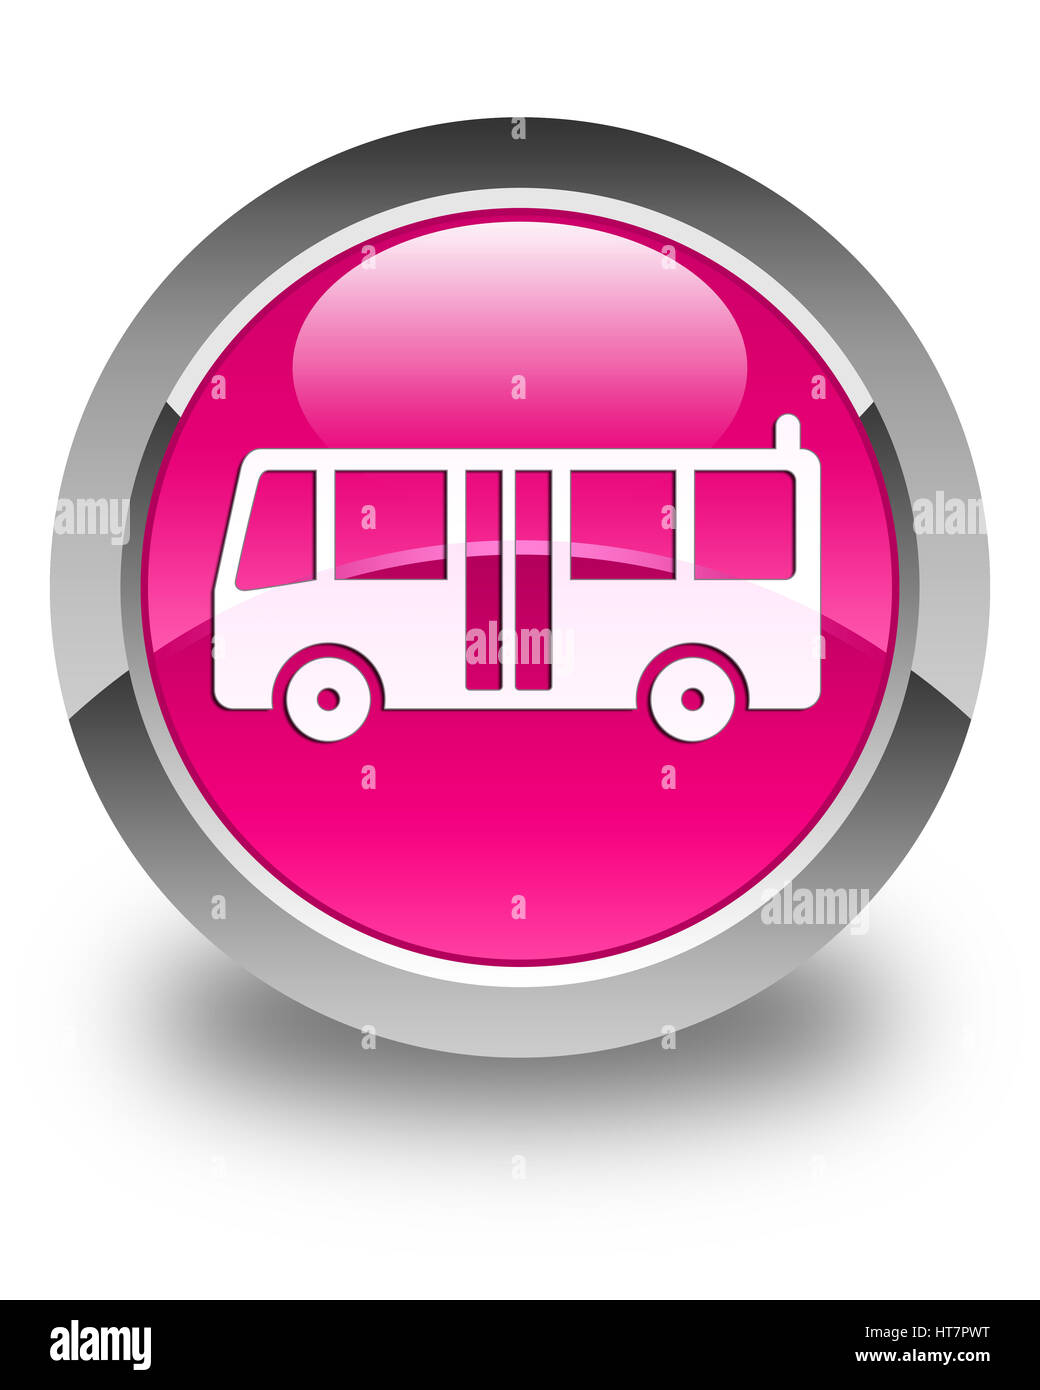 Bus rose Banque d'images détourées - Alamy